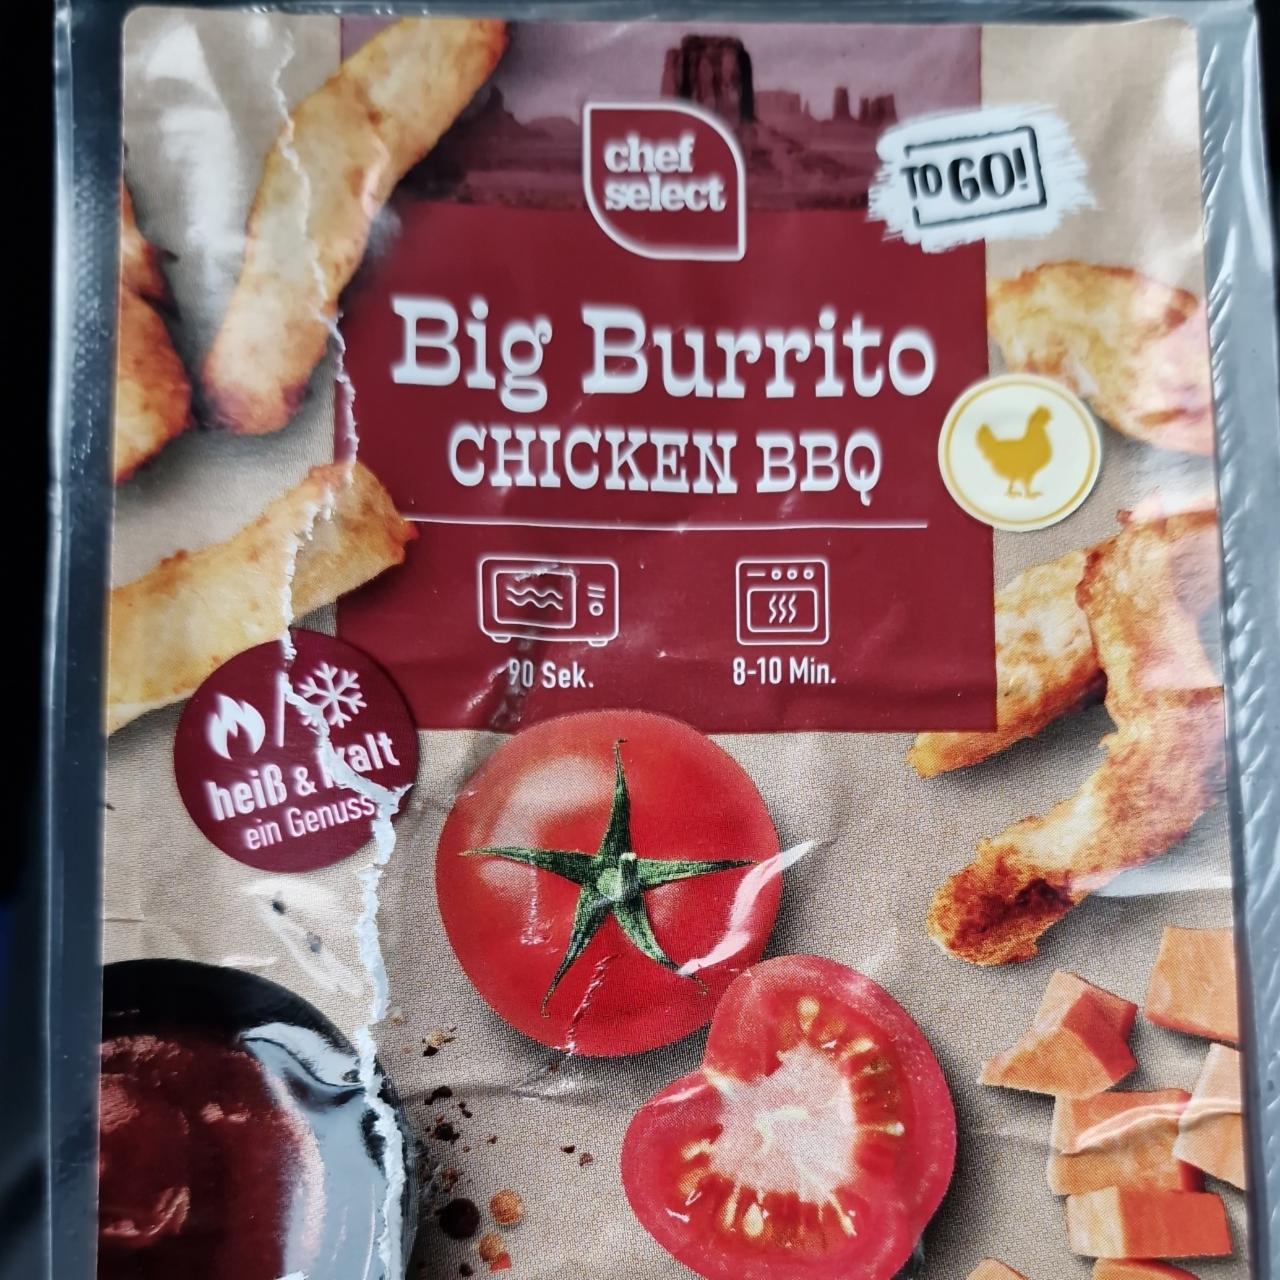 Big Burrito Chicken BBQ nutriční hodnoty Select - Chef kJ a kalorie